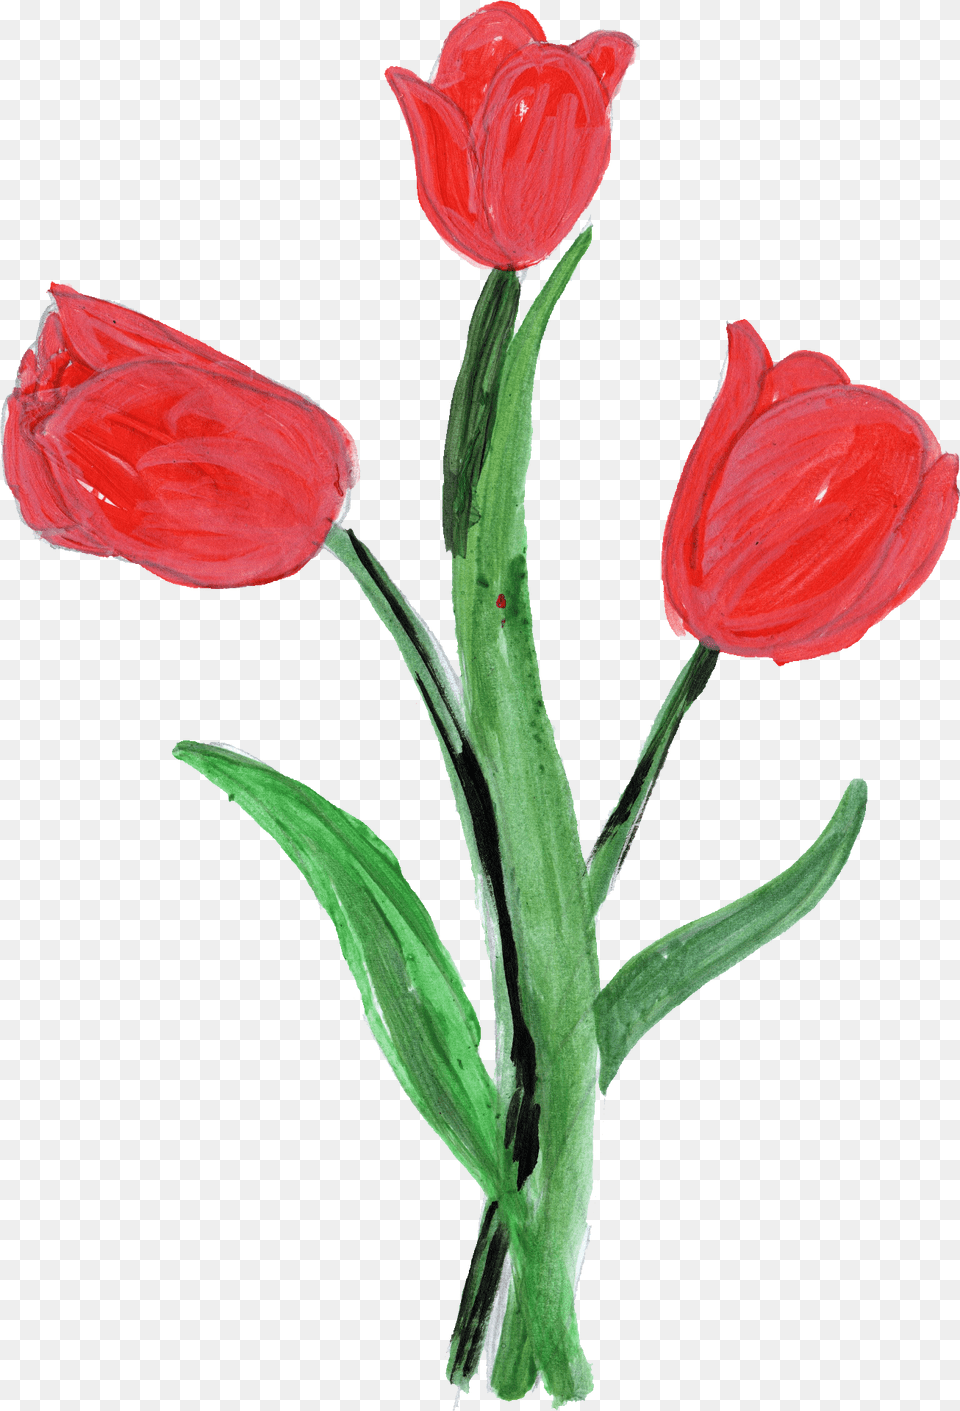 Paint Flower Transparent Onlygfxcom Painted Tulip Flower, Flower Arrangement, Plant, Rose, Petal Png Image